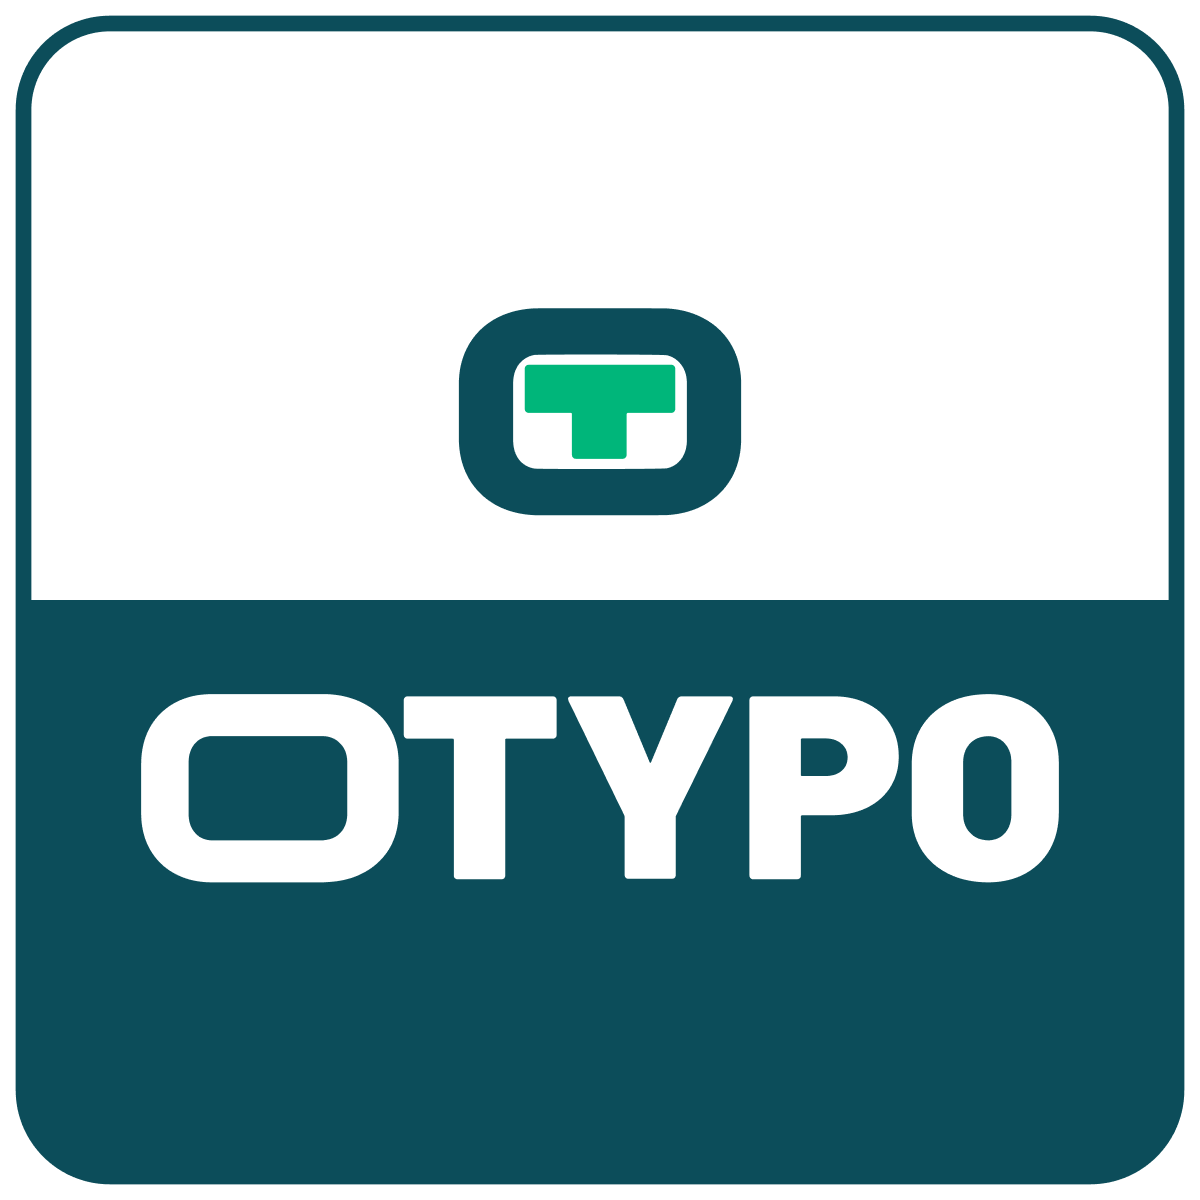 (c) Otypo.com